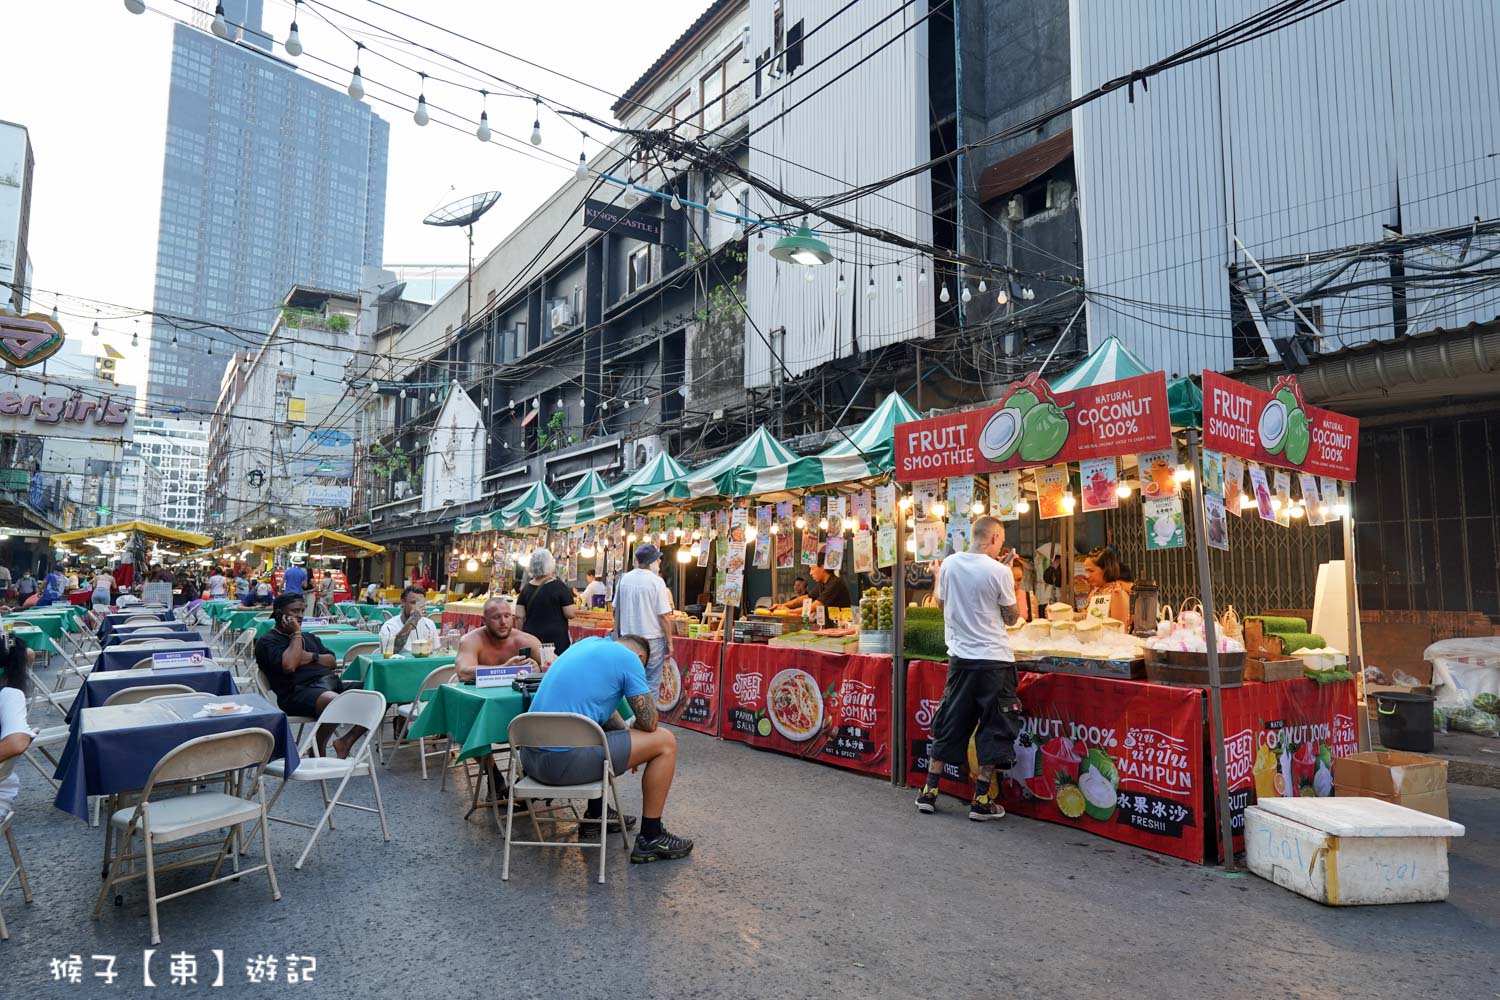 延伸閱讀：[泰國] 帕蓬夜市 BTS Sala Daeng站步行2分鐘 各種在地美食小吃 紀念品 夜店酒吧 越晚越熱鬧